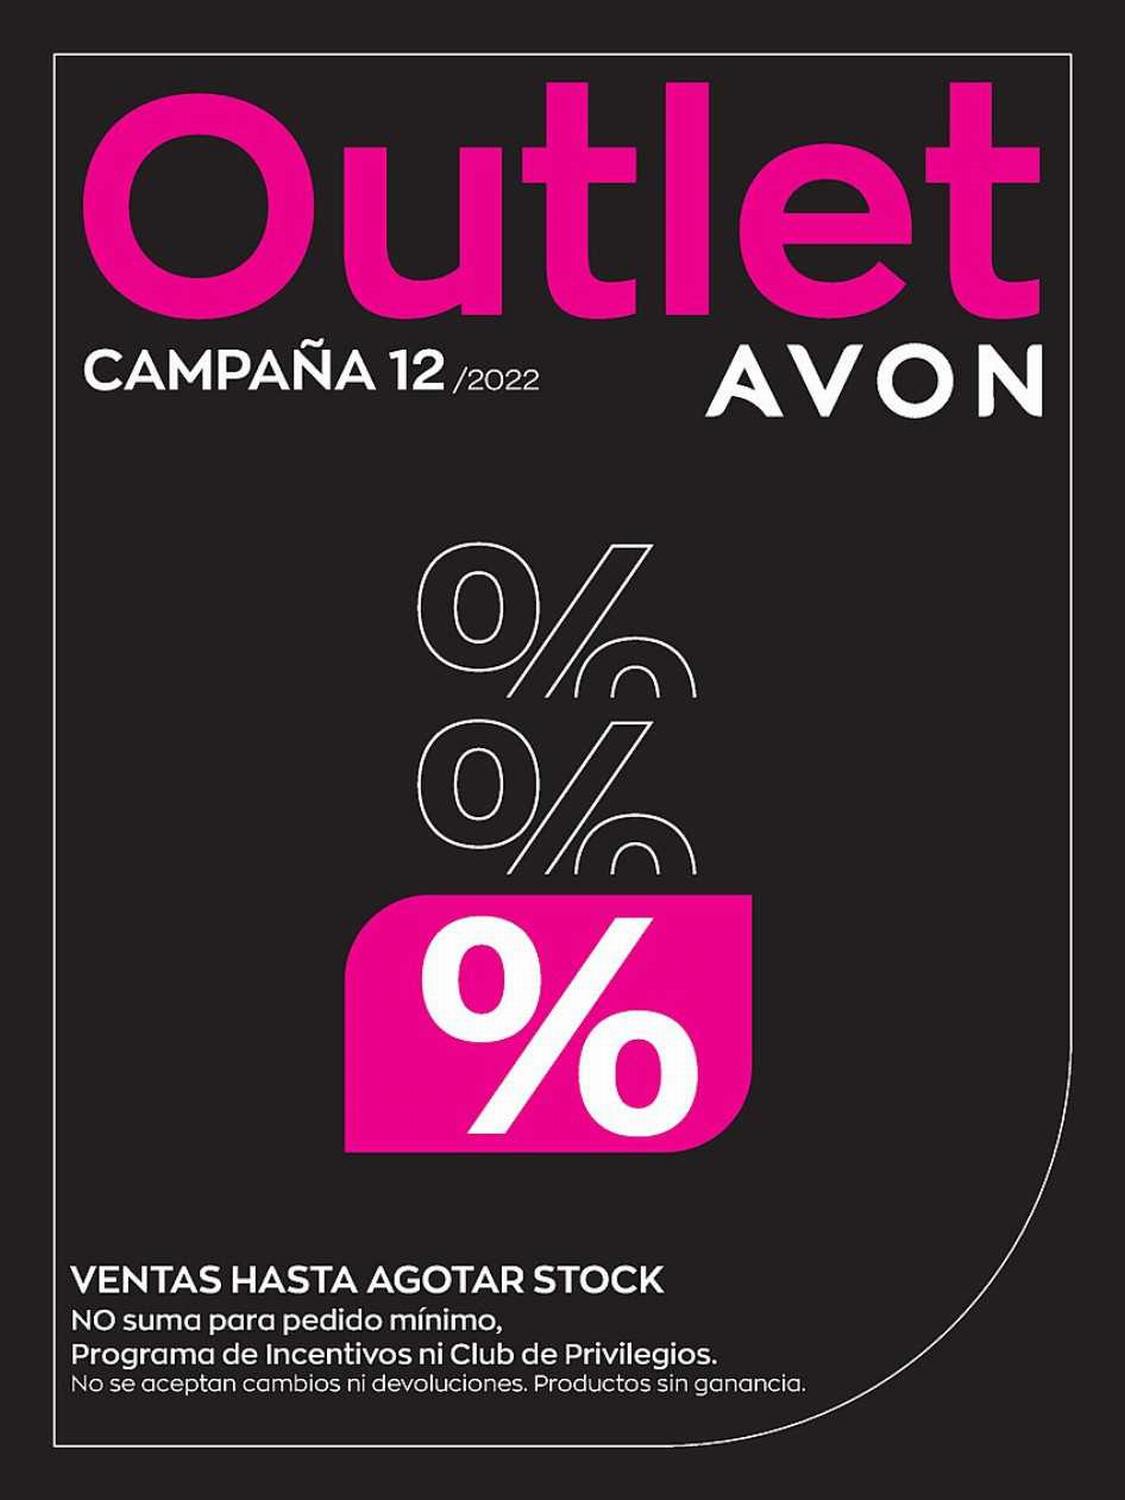 Avon Outlet Campaña 12 2022 Perú